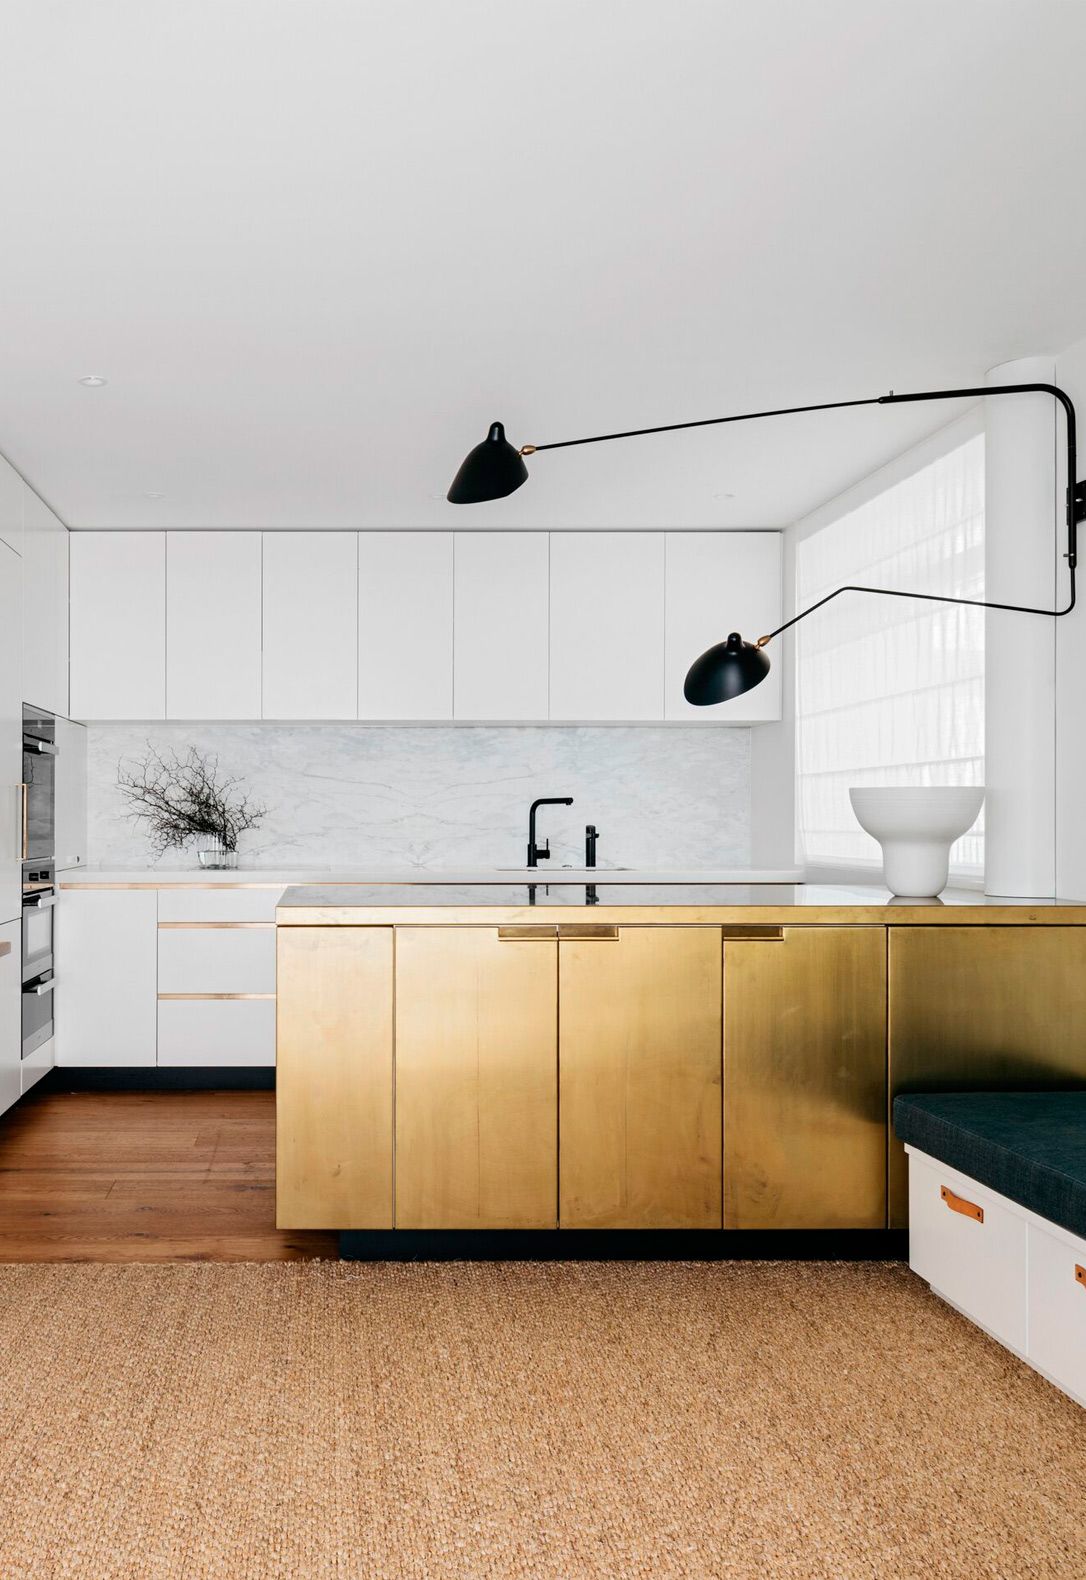 61 Kitchen Cabinet Design Ideas 2022